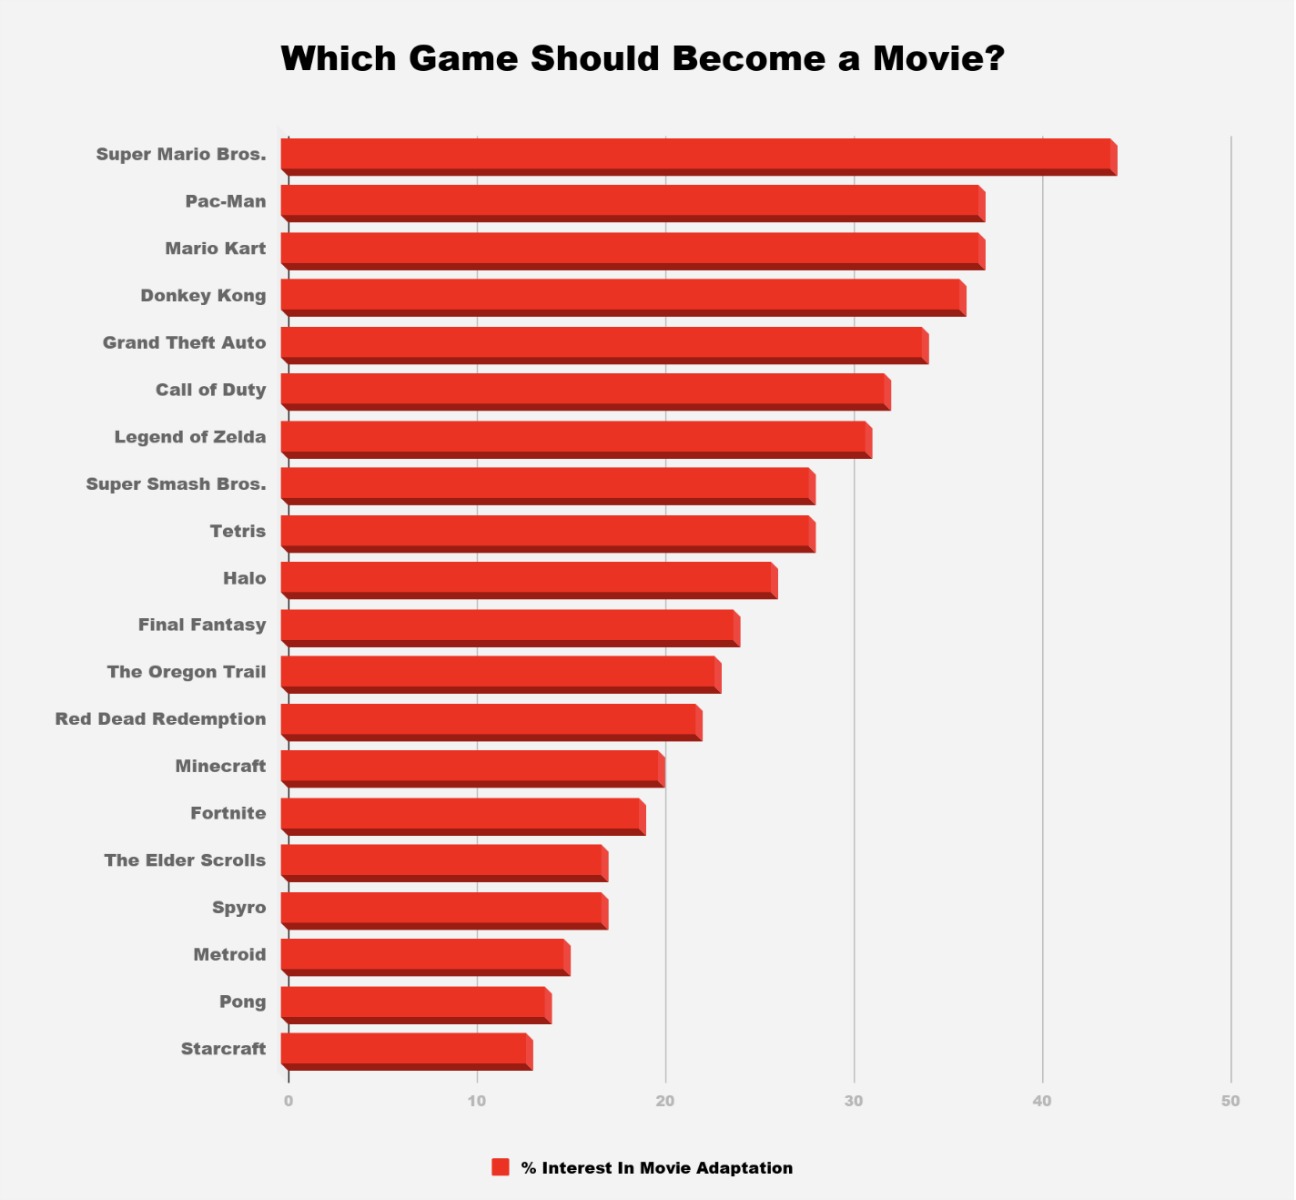 外媒统计玩家最想看到的游戏改编电影 《超级马里奥兄弟》第一 2%title%